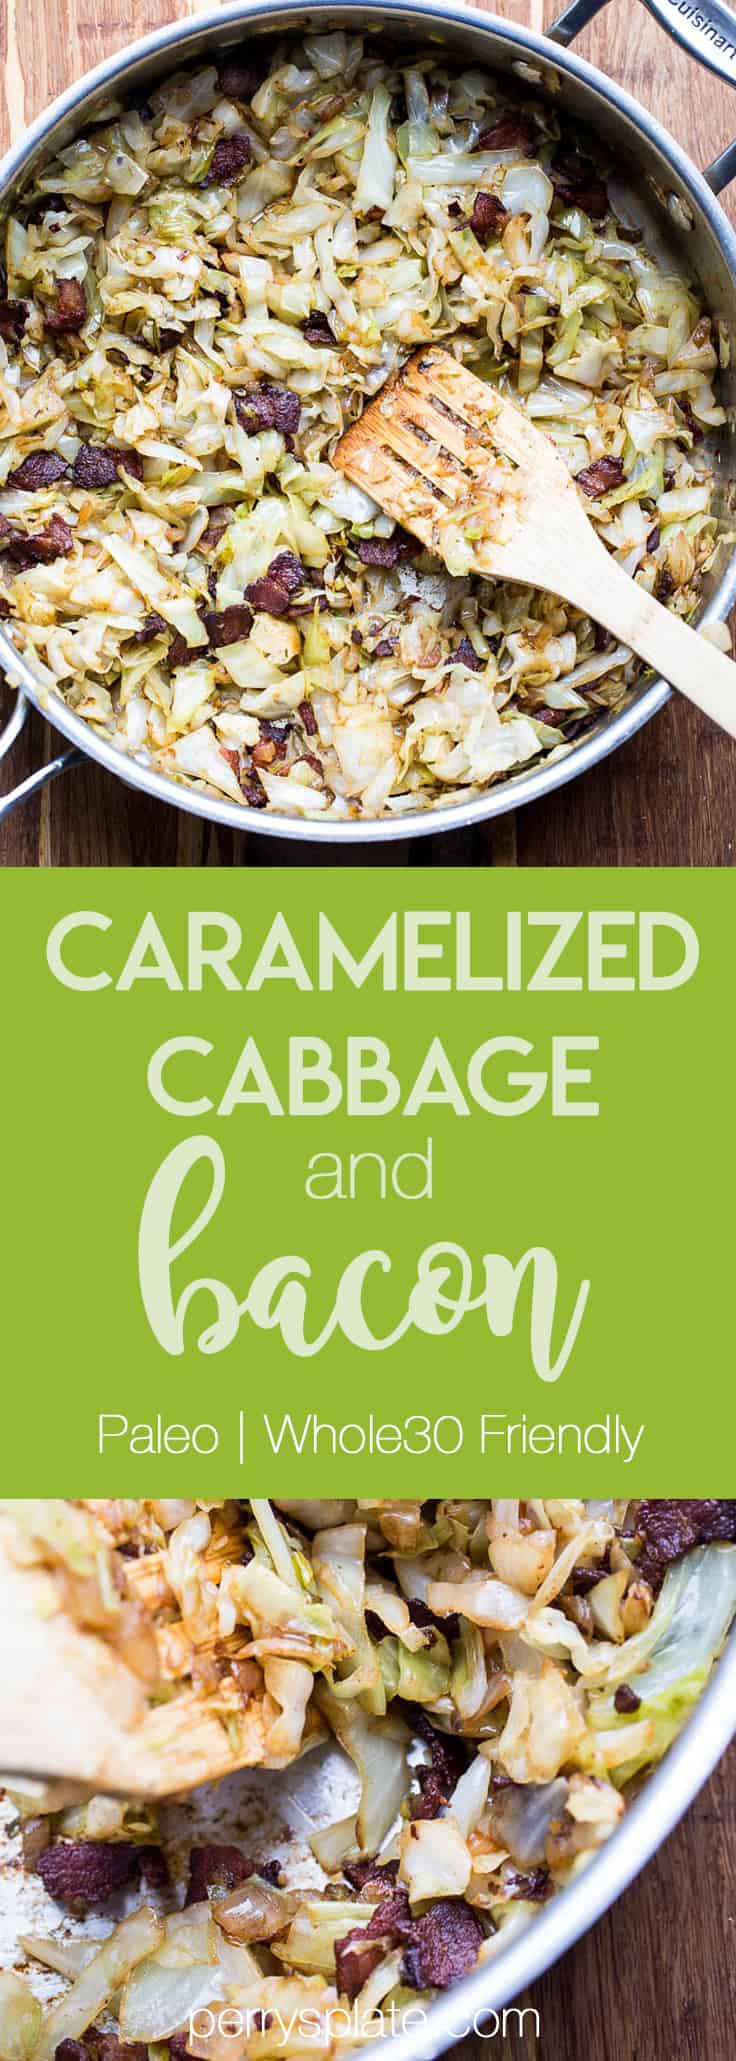 Caramelized Cabbage and Bacon | Paleo recipes | Whole30 recipes | Keto recipes | Low-carb recipes | perrysplate.com